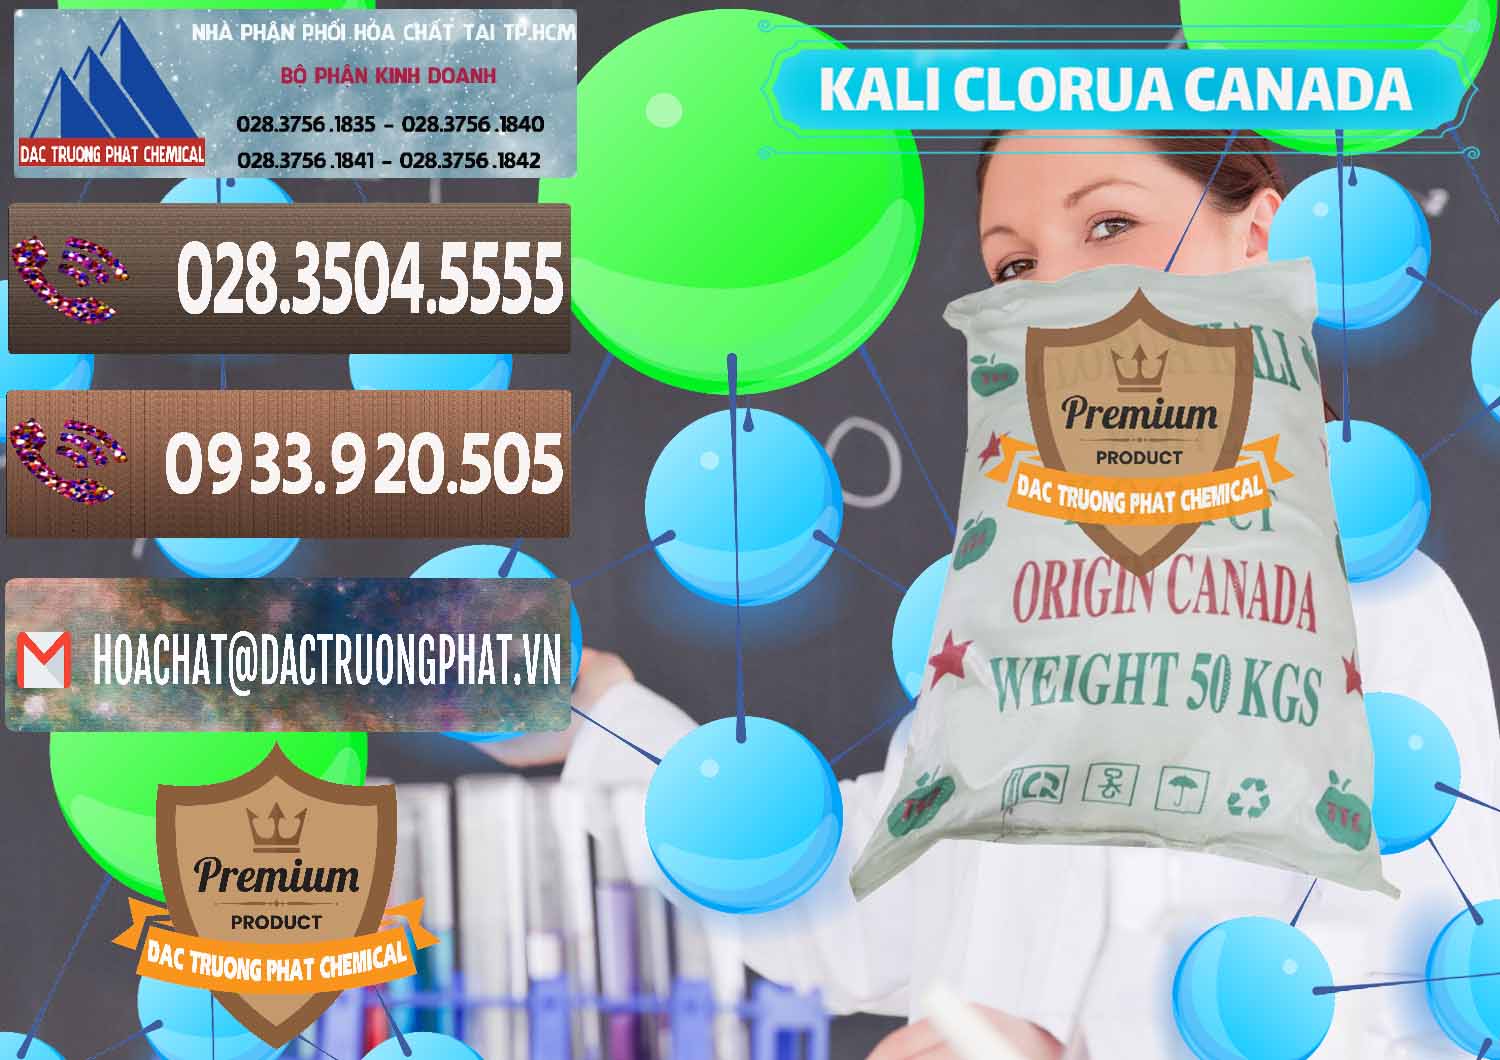 Đơn vị nhập khẩu - bán KCL – Kali Clorua Trắng Canada - 0437 - Công ty cung cấp và phân phối hóa chất tại TP.HCM - hoachatviet.net